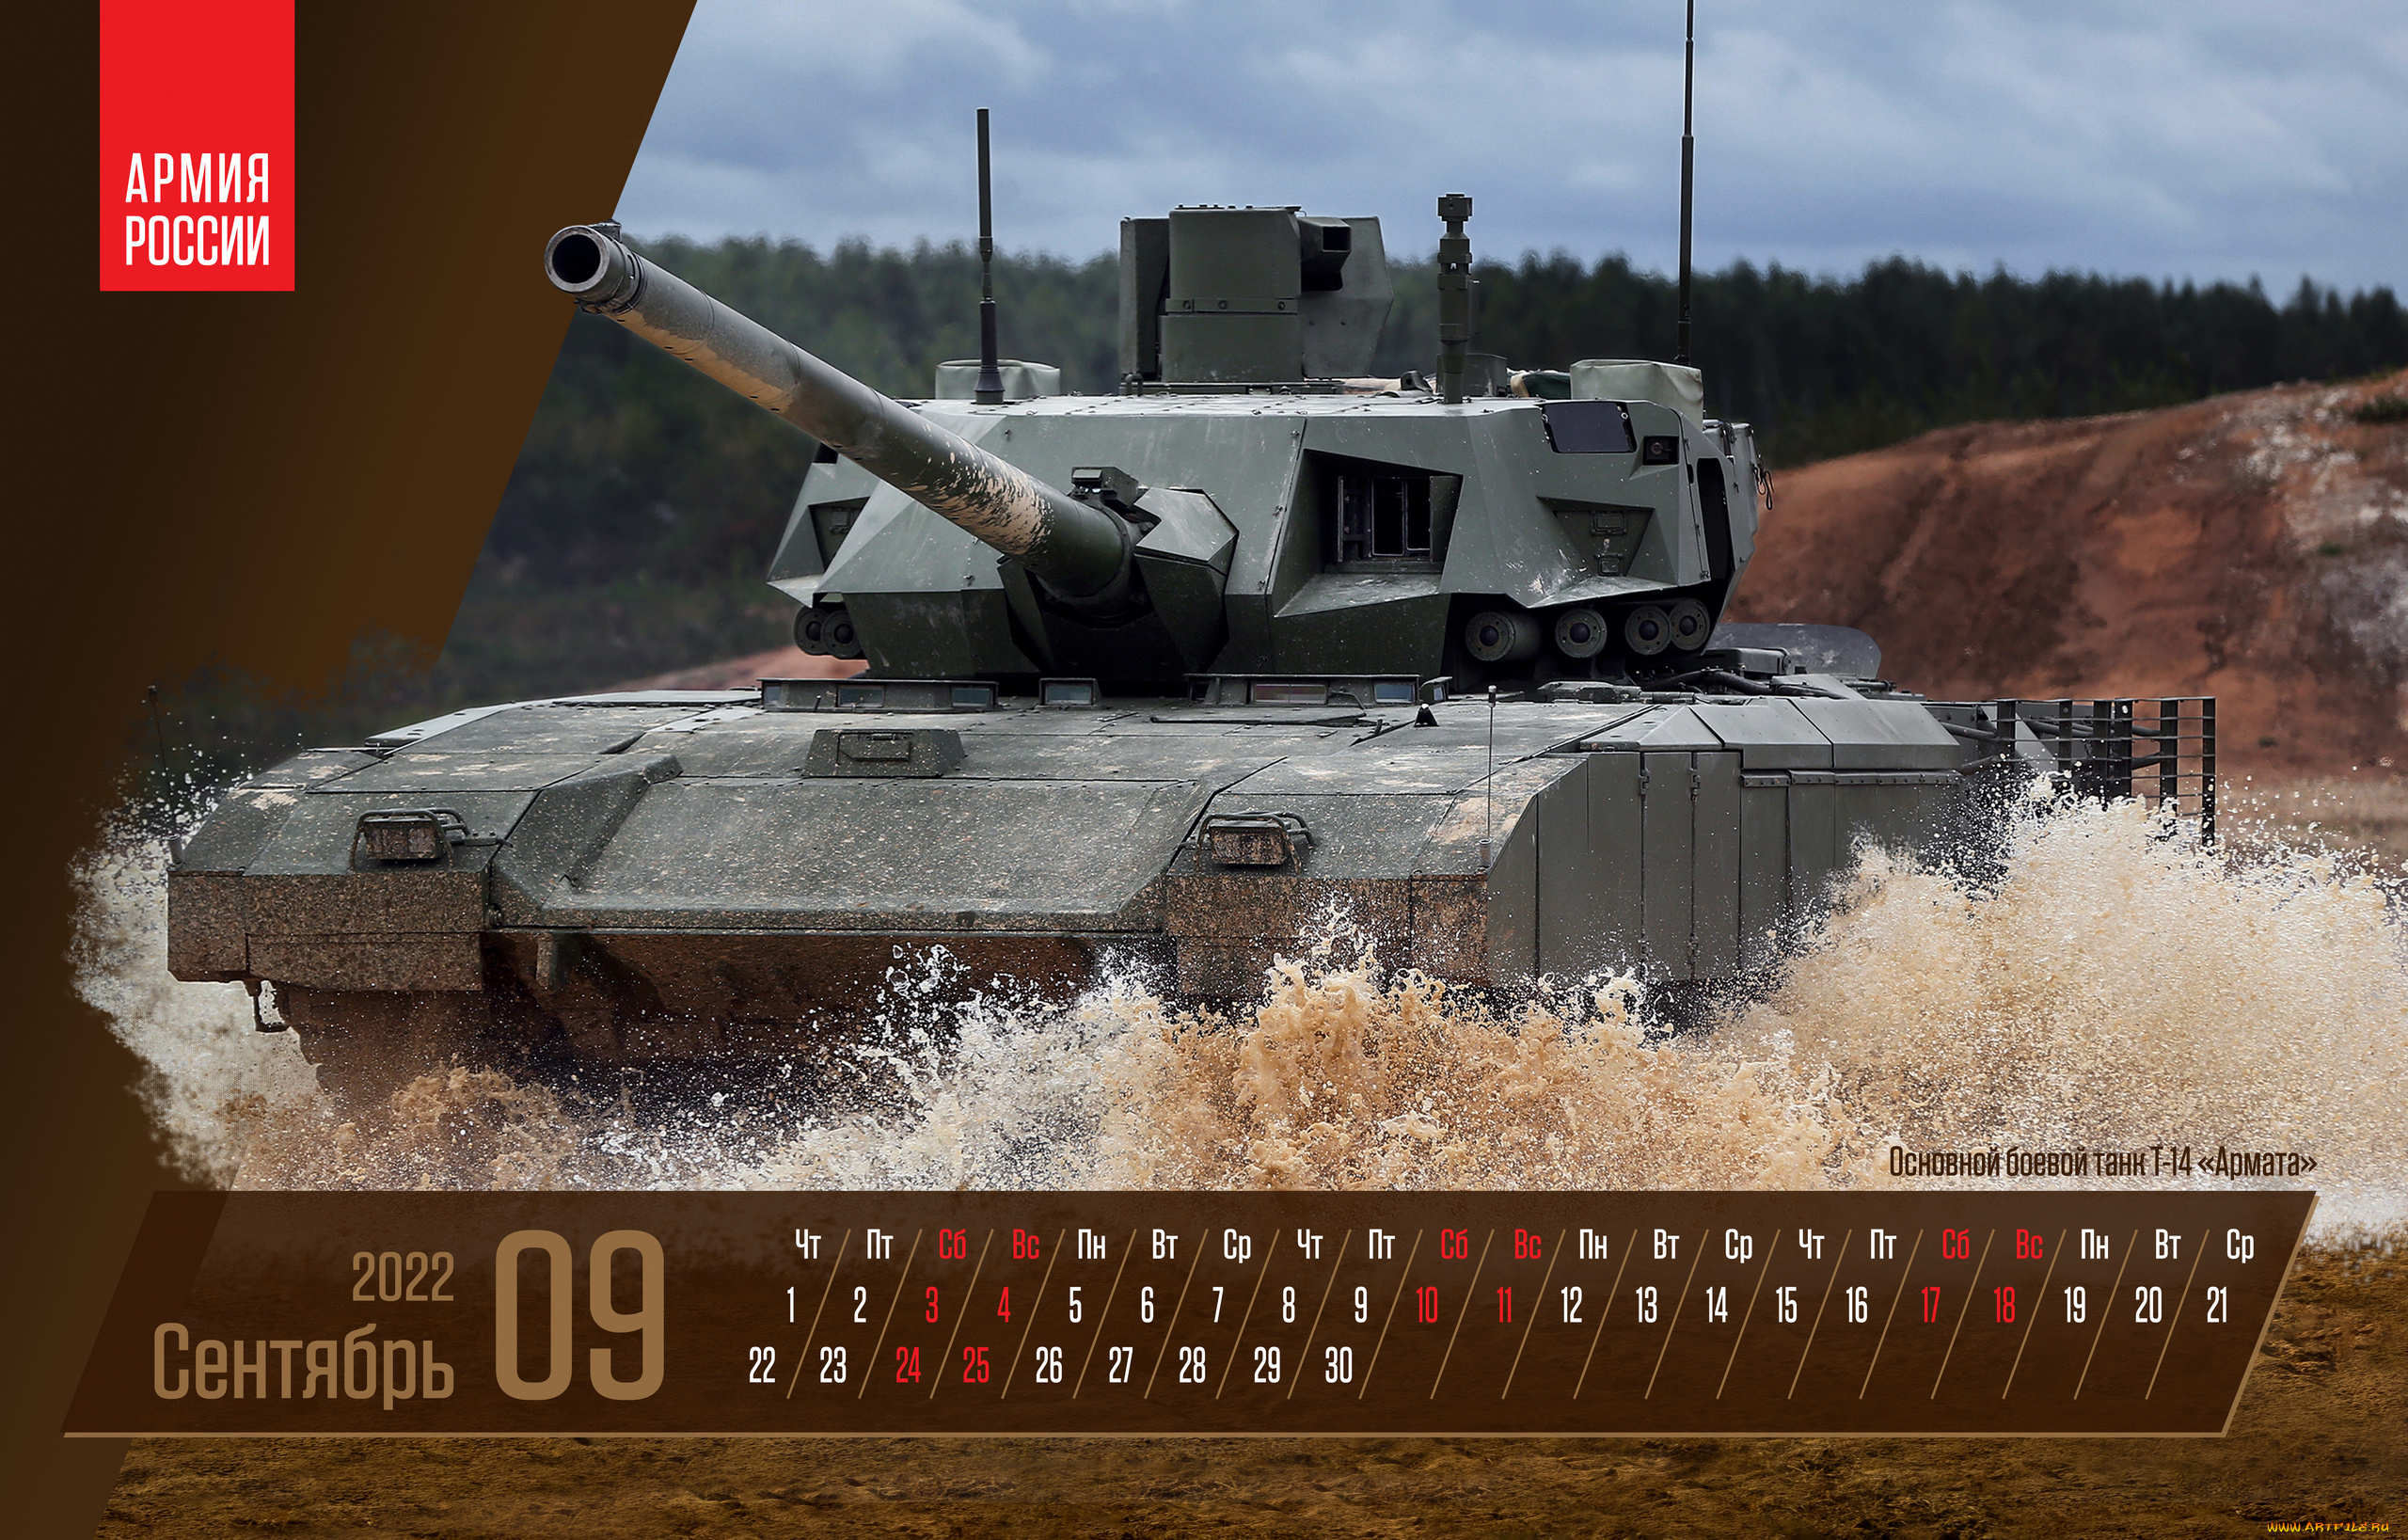 календари, оружие, сентябрь, плакат, основной, боевой, танк, т14, армата